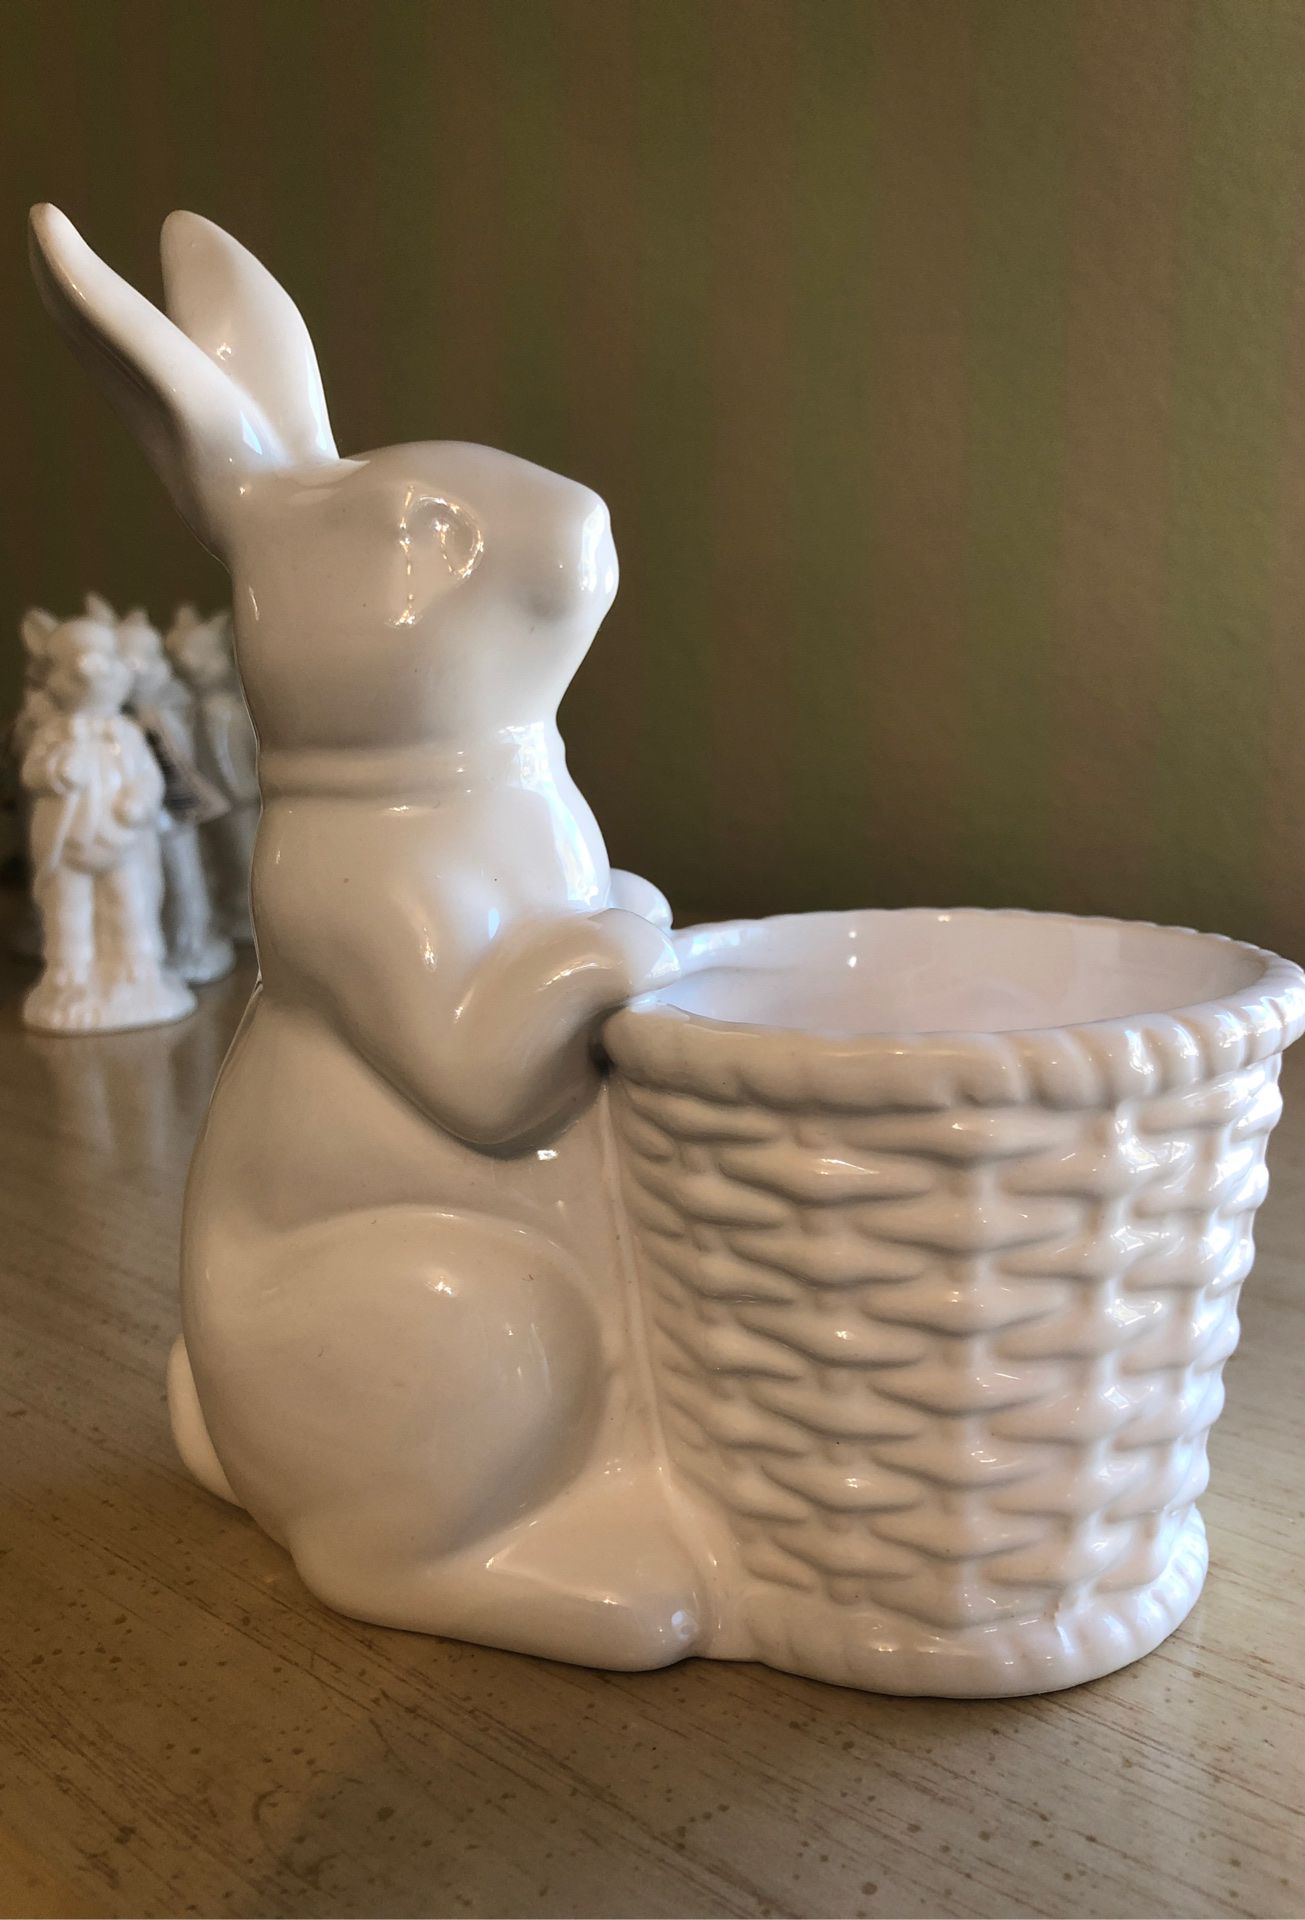 White porcelain Easter bunny